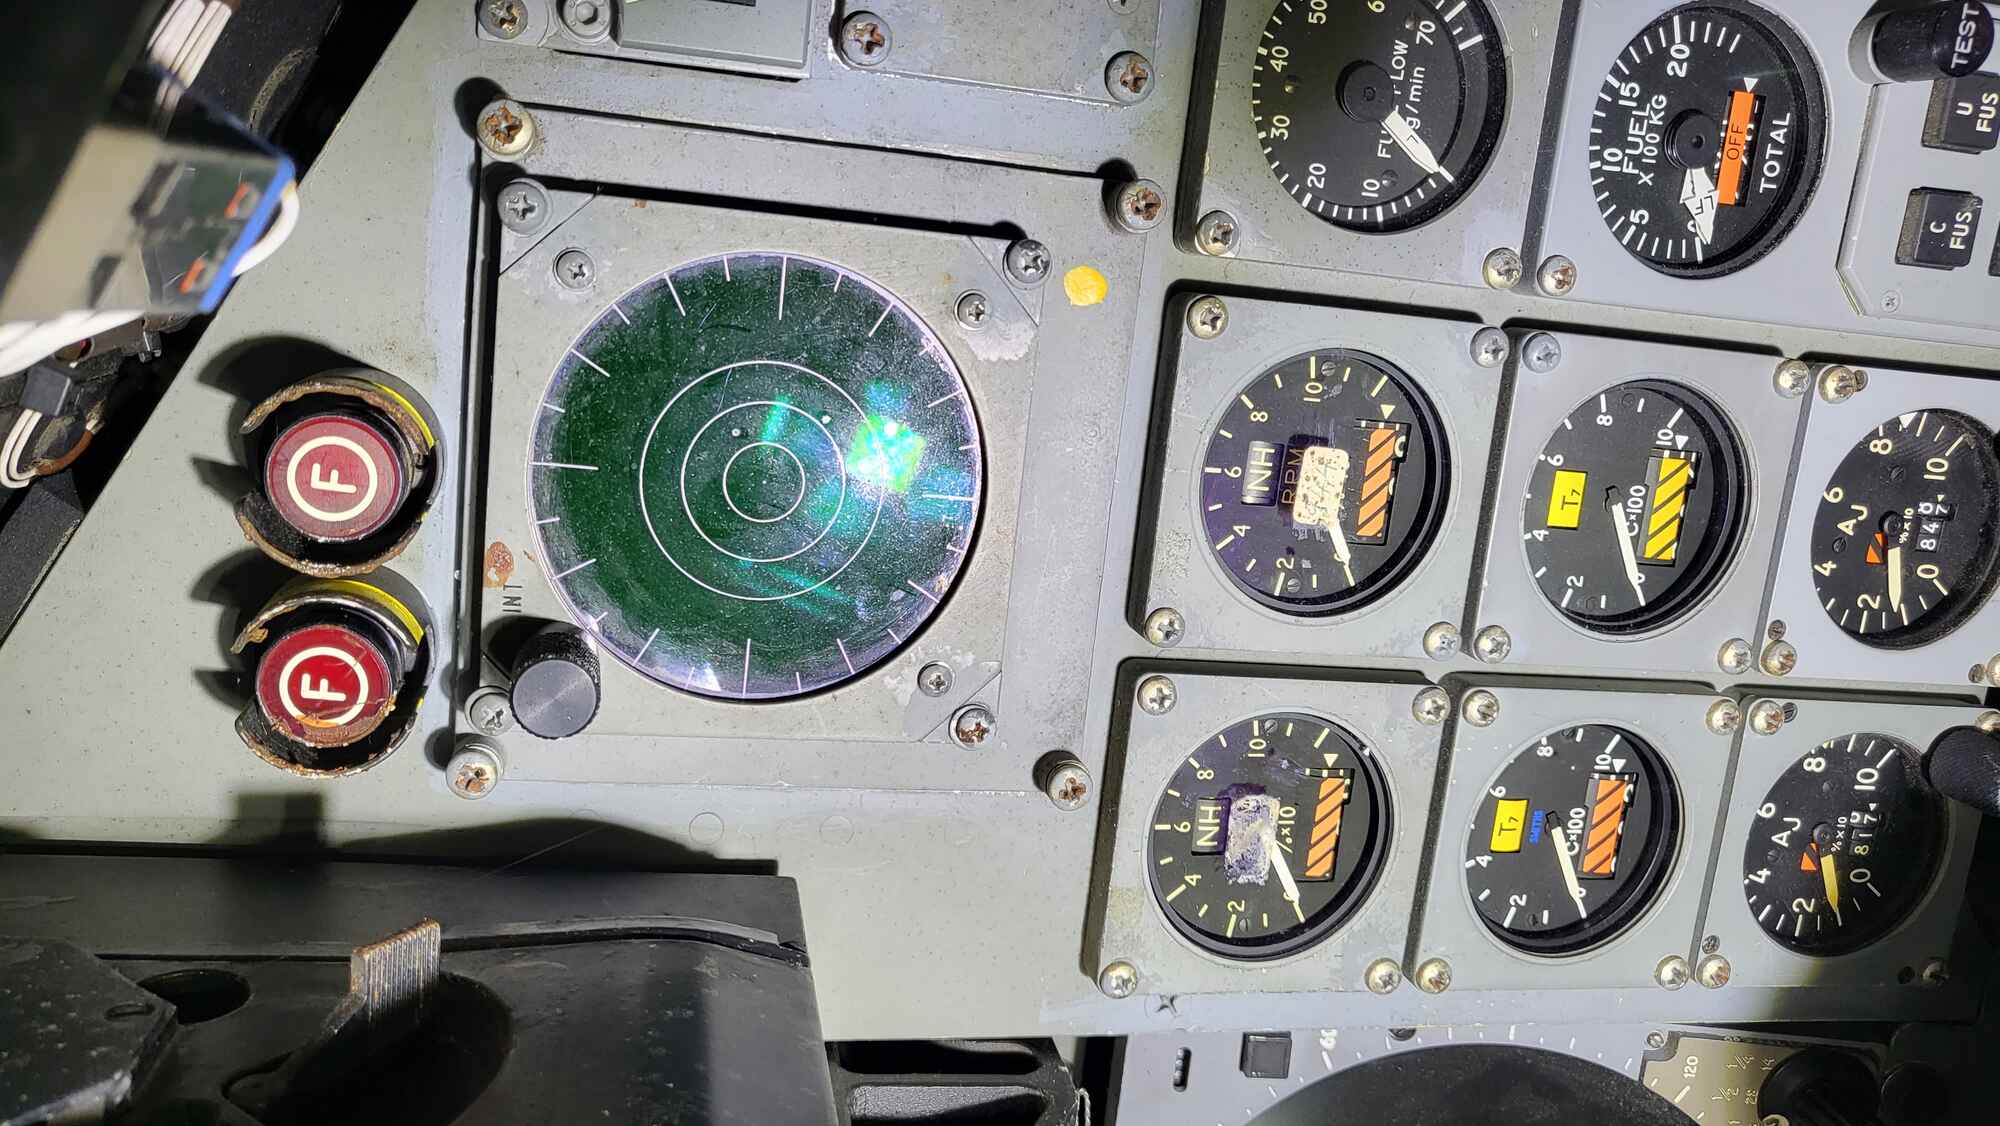 cockpit 2